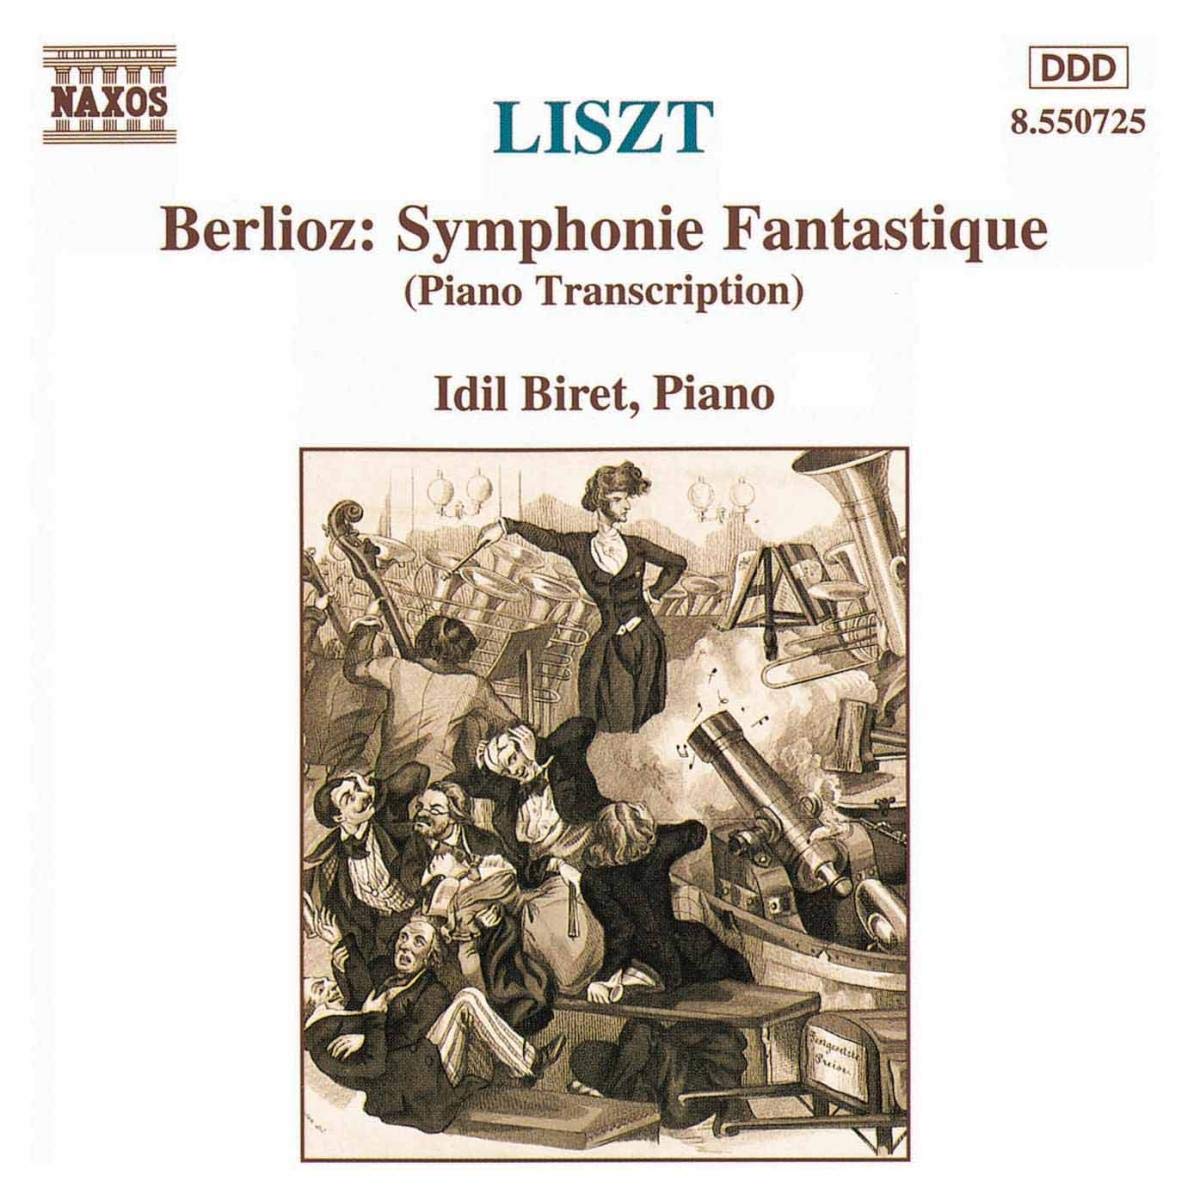 LISZT: Berlioz Symphonie Fantastique (Transcription)